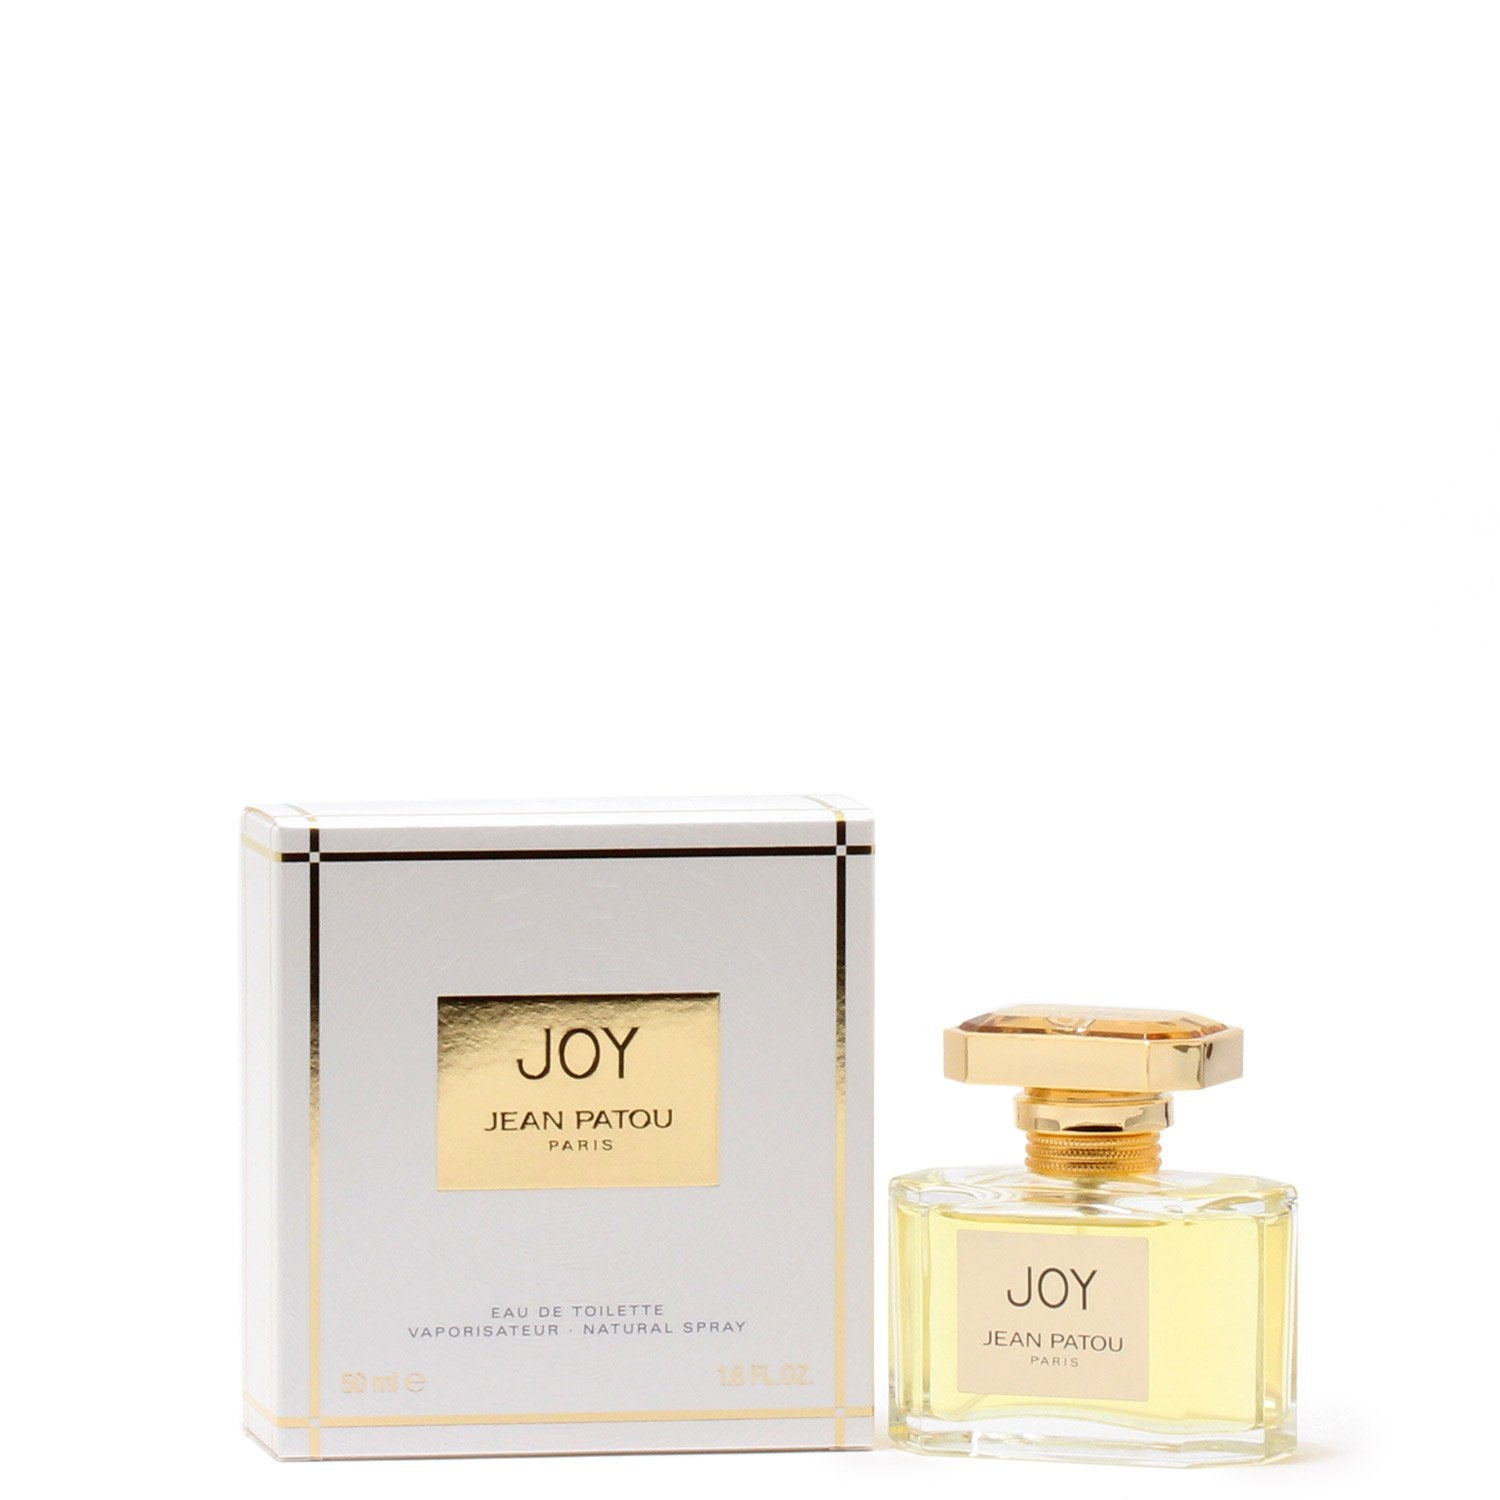 Perfume - JOY FOR WOMEN BY JEAN PATOU - EAU DE TOILETTE SPRAY